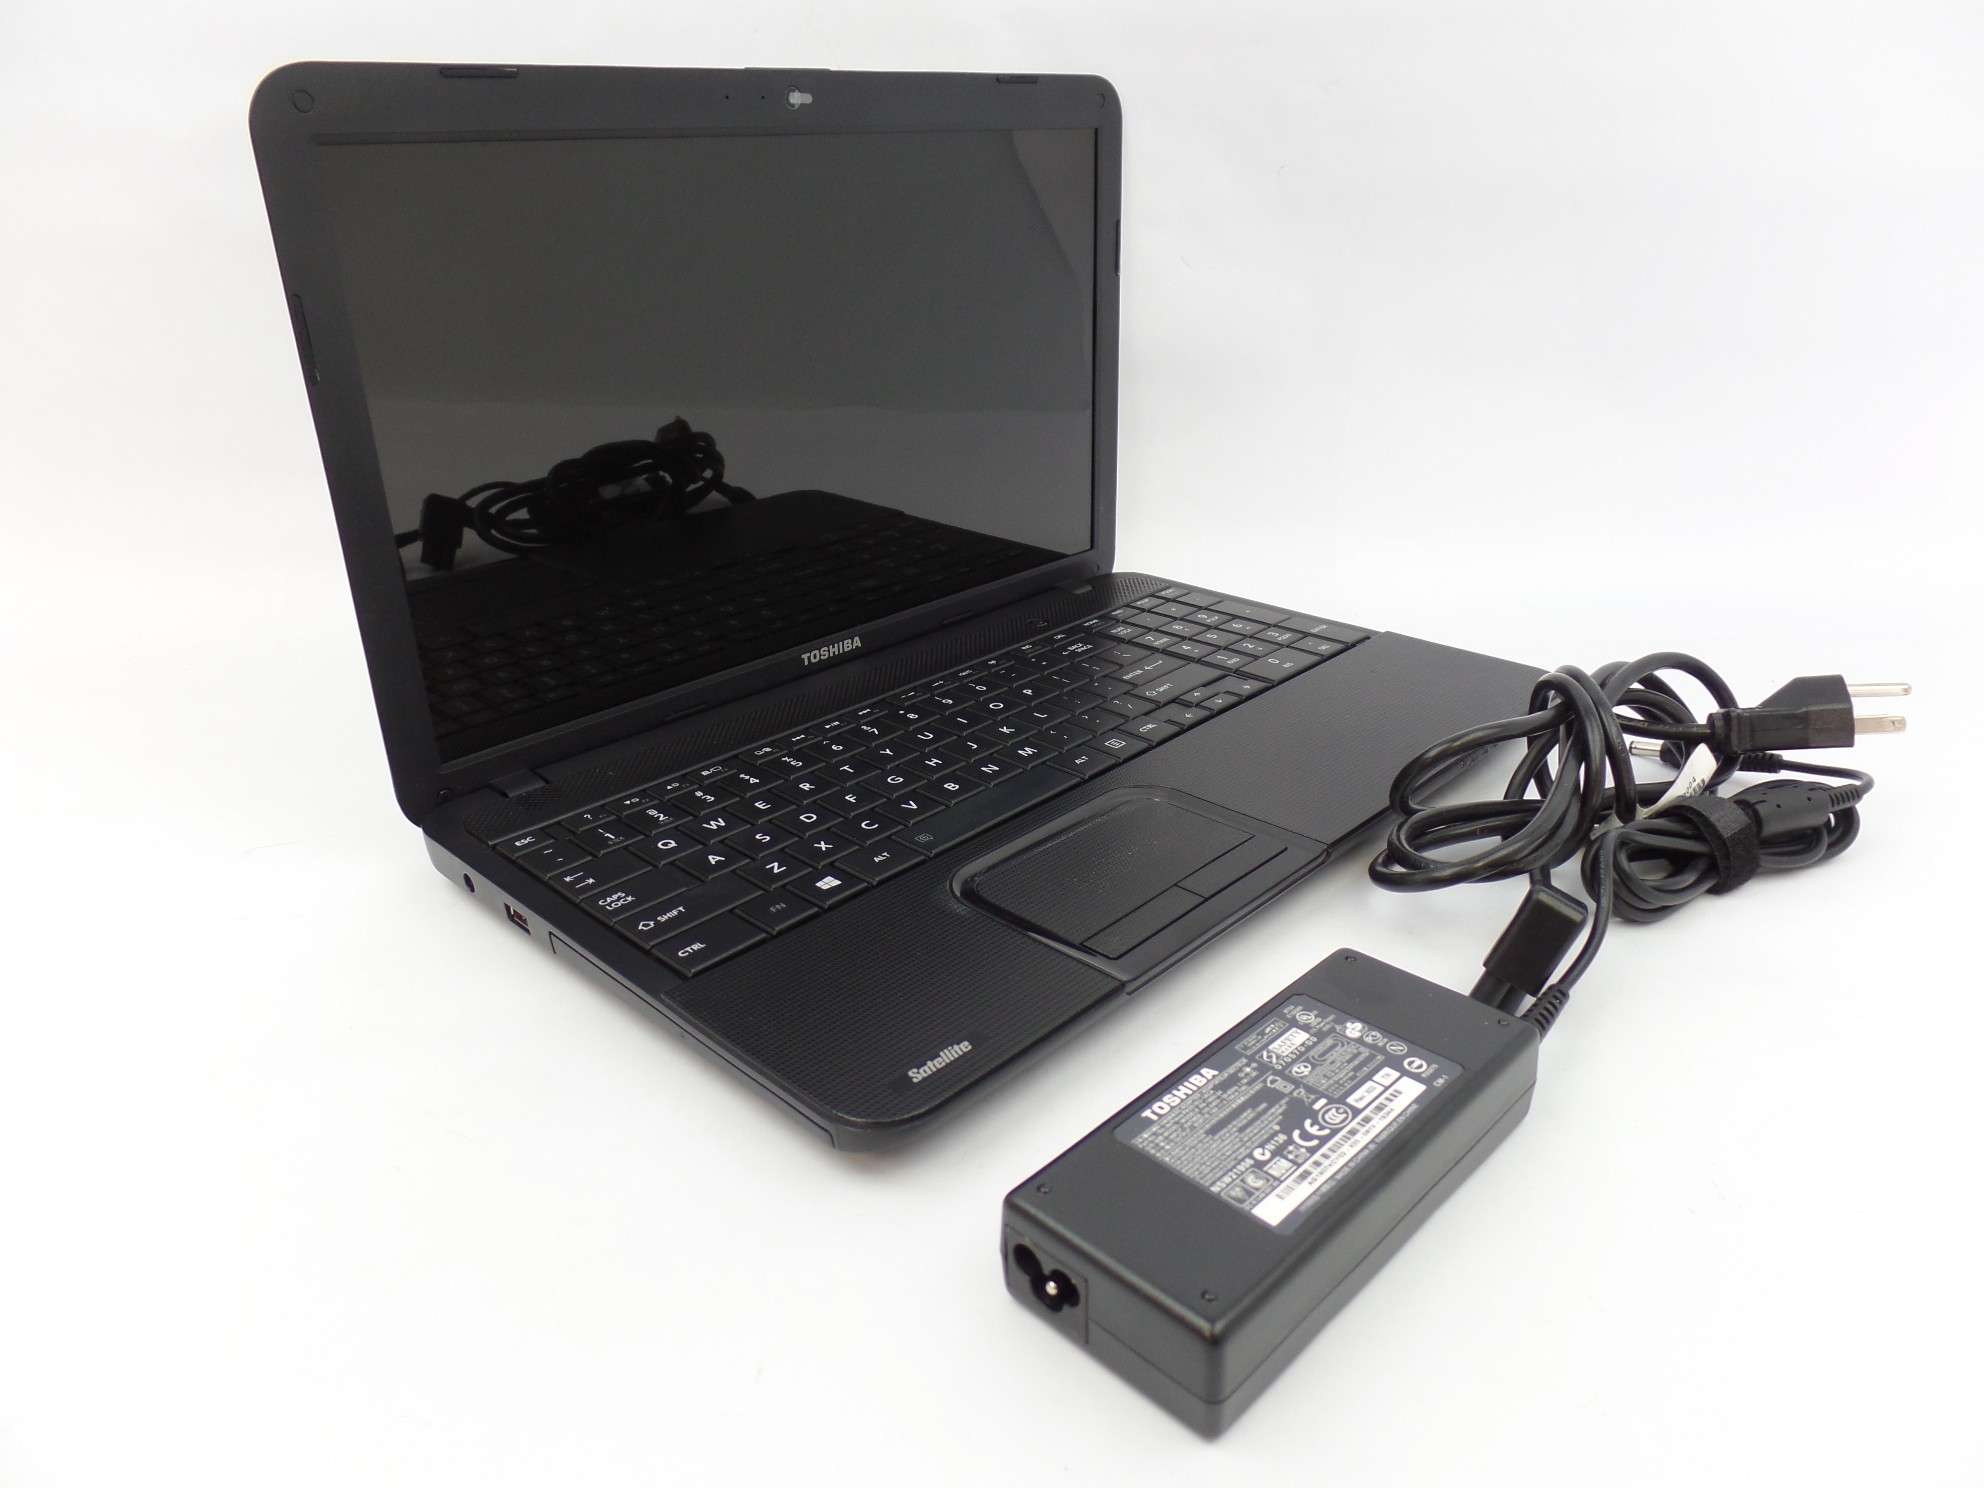 Toshiba Satellite C855D-S5104 15.6" HD AMD E-300 1.3GHz 4GB 500GB W10H Laptop U